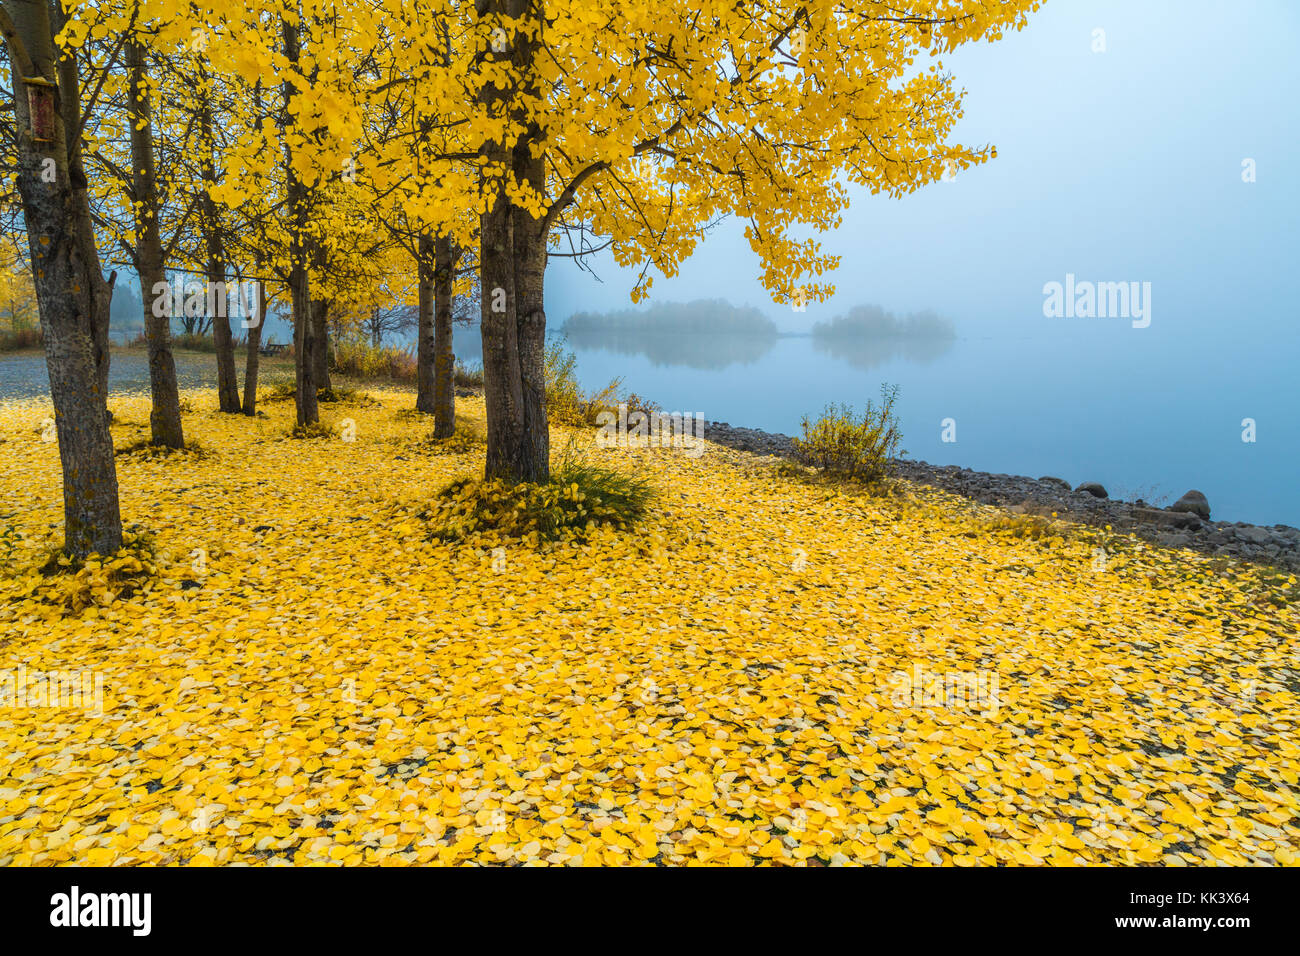 Arbre d'Aspen avec des feuilles jaunes sur elle et beaucoup de feuilles sur le sol, brouillard en arrière-plan et arbres reflétant dans la rivière Lule, comté de Jokkmokk, suédois Banque D'Images